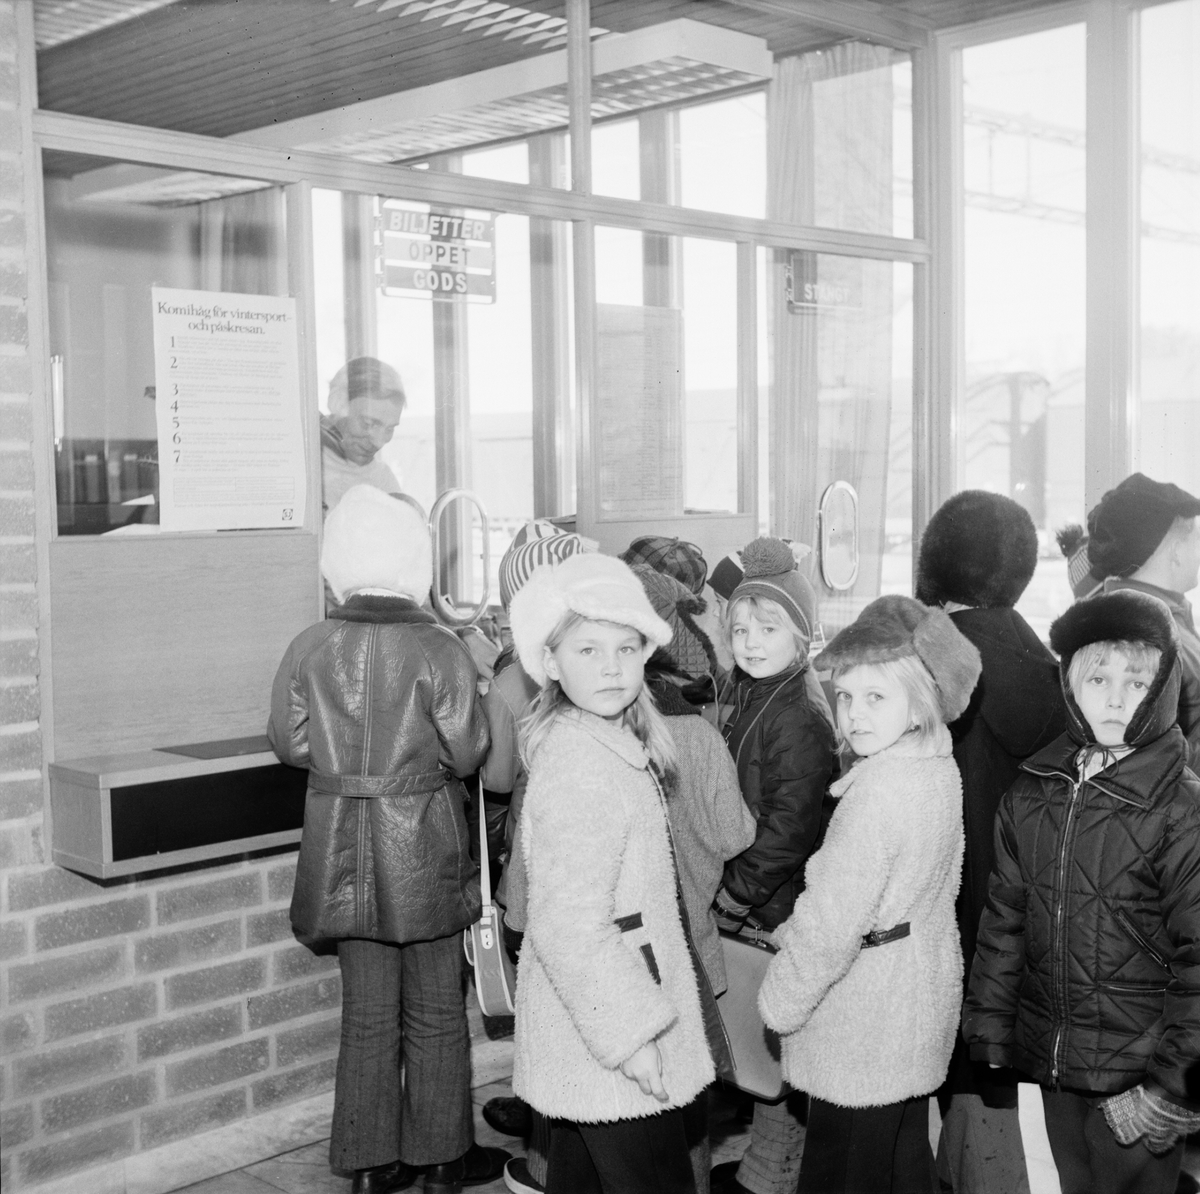 Köpa biljett och åka tåg, populär lektion i Örbyhus, Uppland, mars 1972